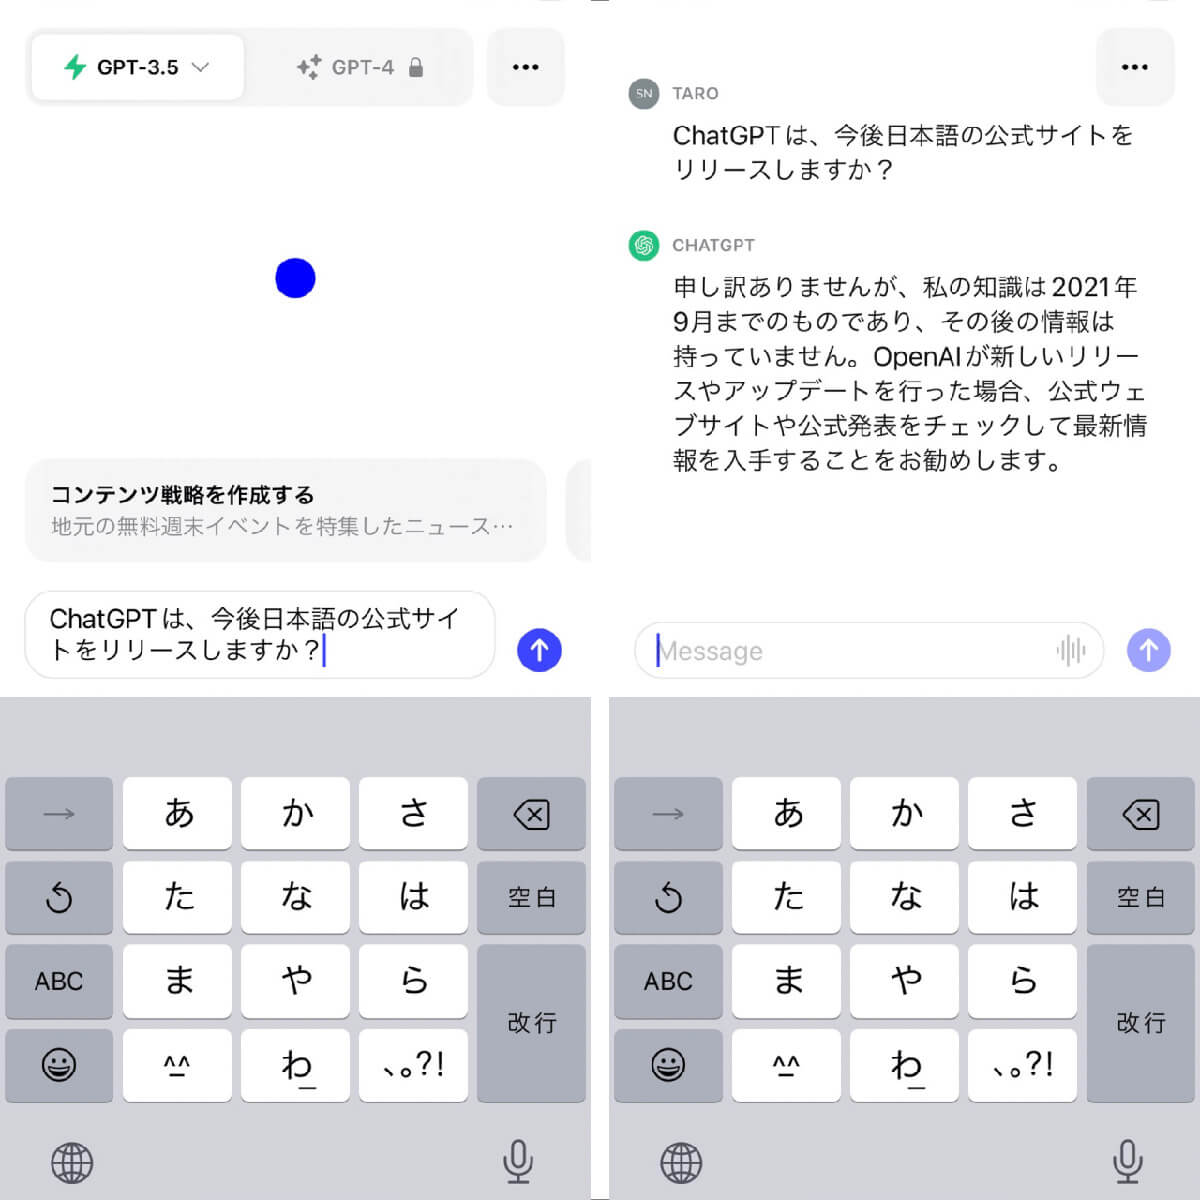 【おさらい】ChatGPTに日本語で質問し、日本語で返答を得る方法1